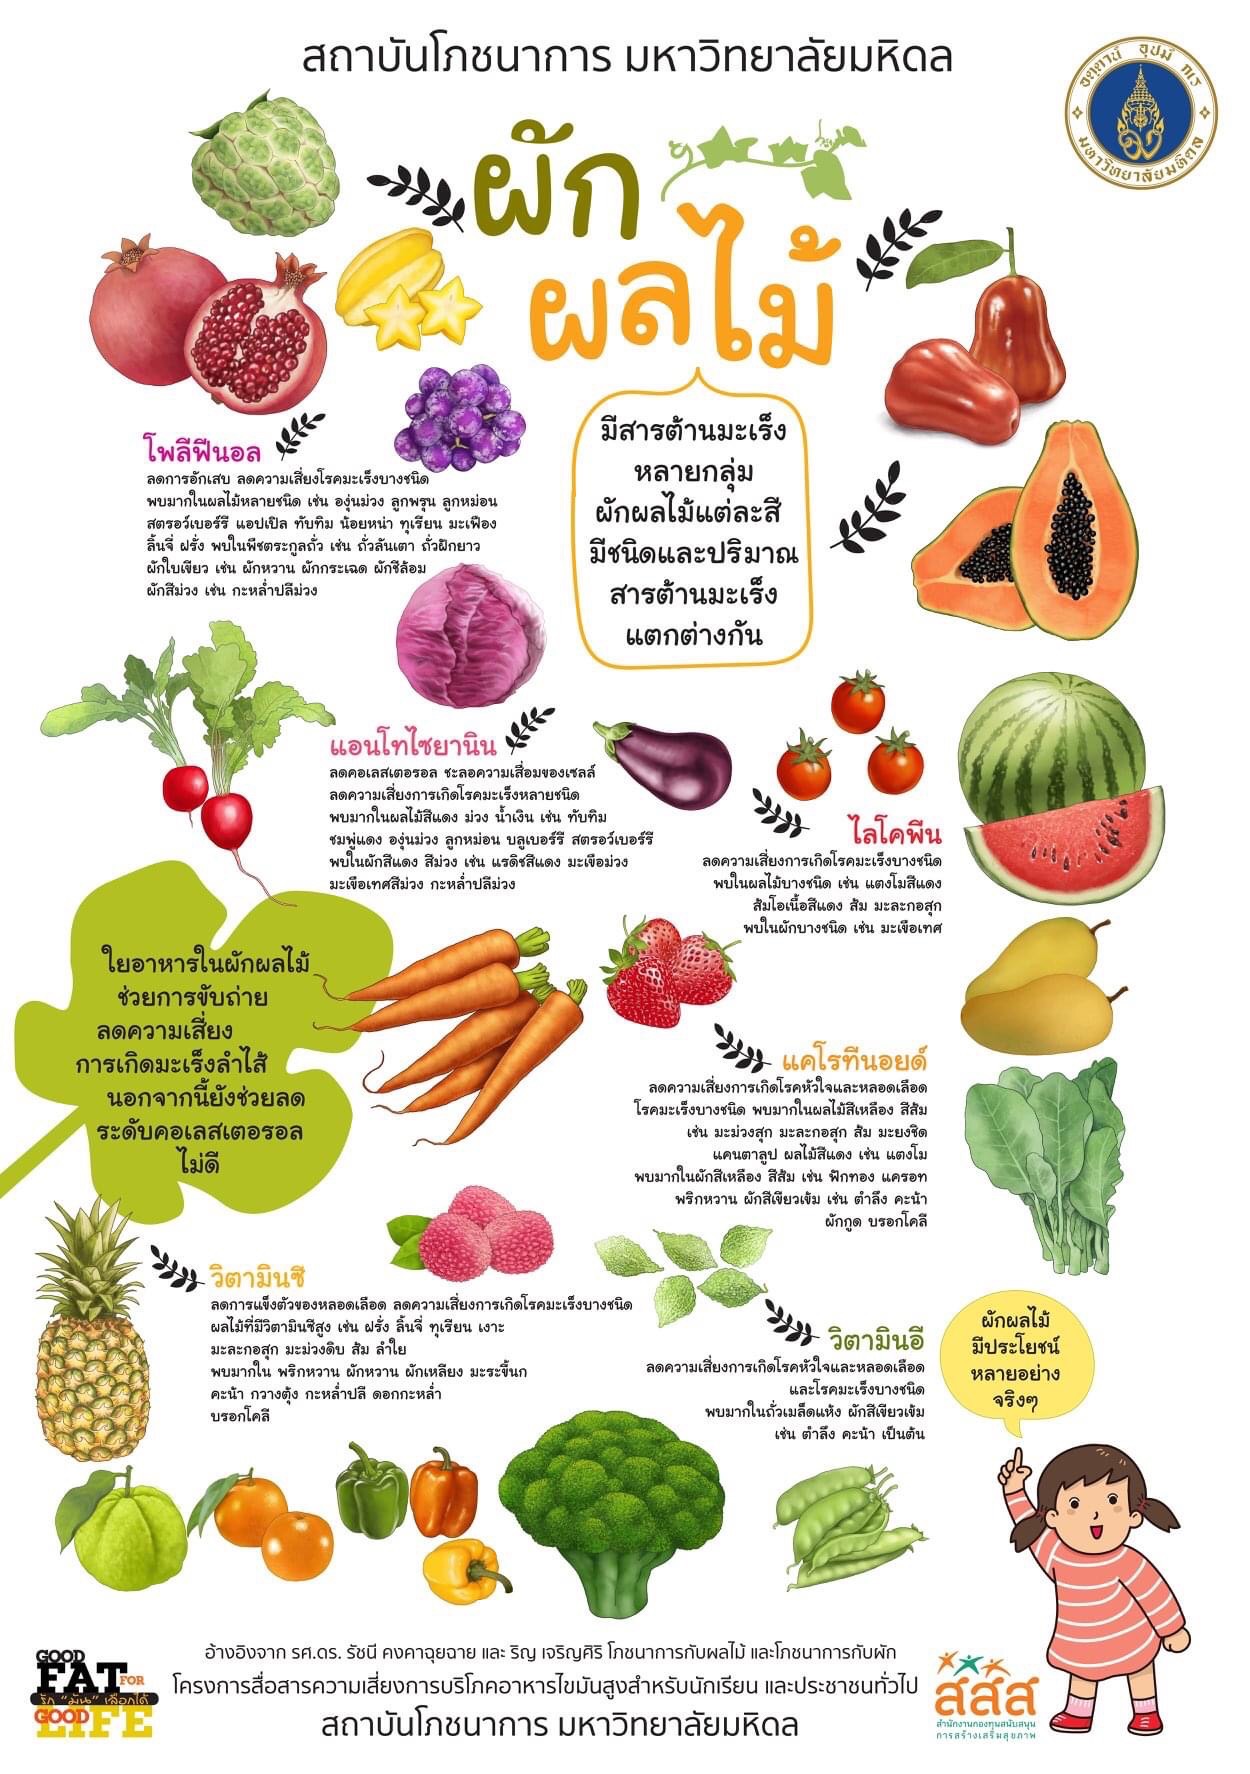 โภชนาการผัก และโภชนาการผลไม้